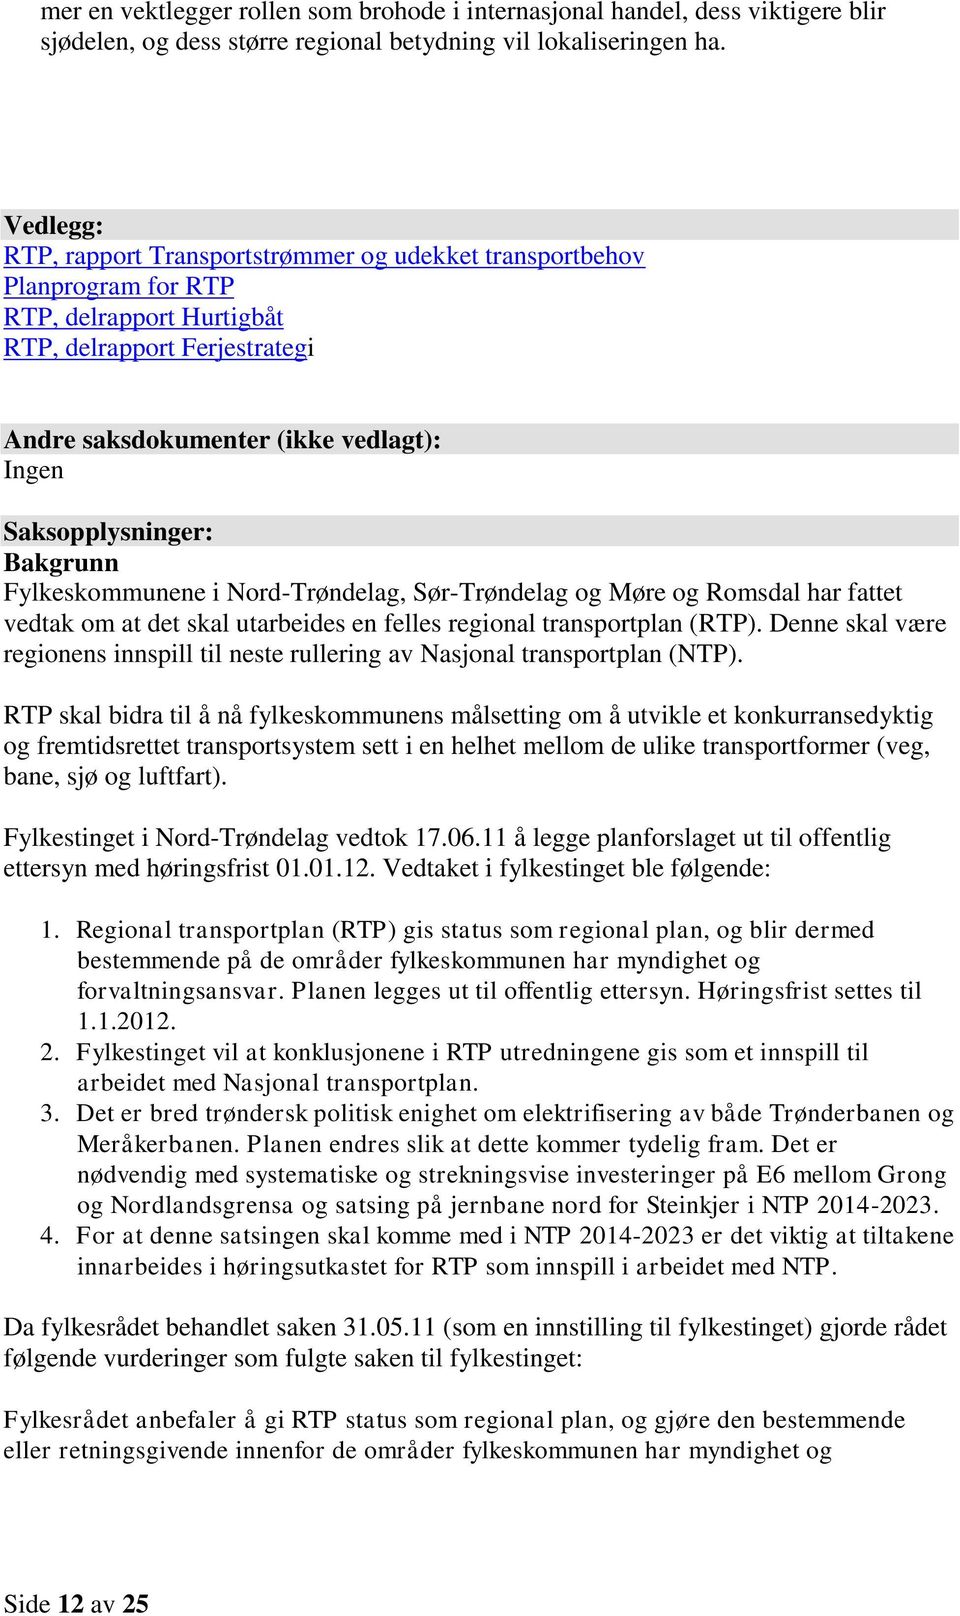 Saksopplysninger: Bakgrunn Fylkeskommunene i Nord-Trøndelag, Sør-Trøndelag og Møre og Romsdal har fattet vedtak om at det skal utarbeides en felles regional transportplan (RTP).